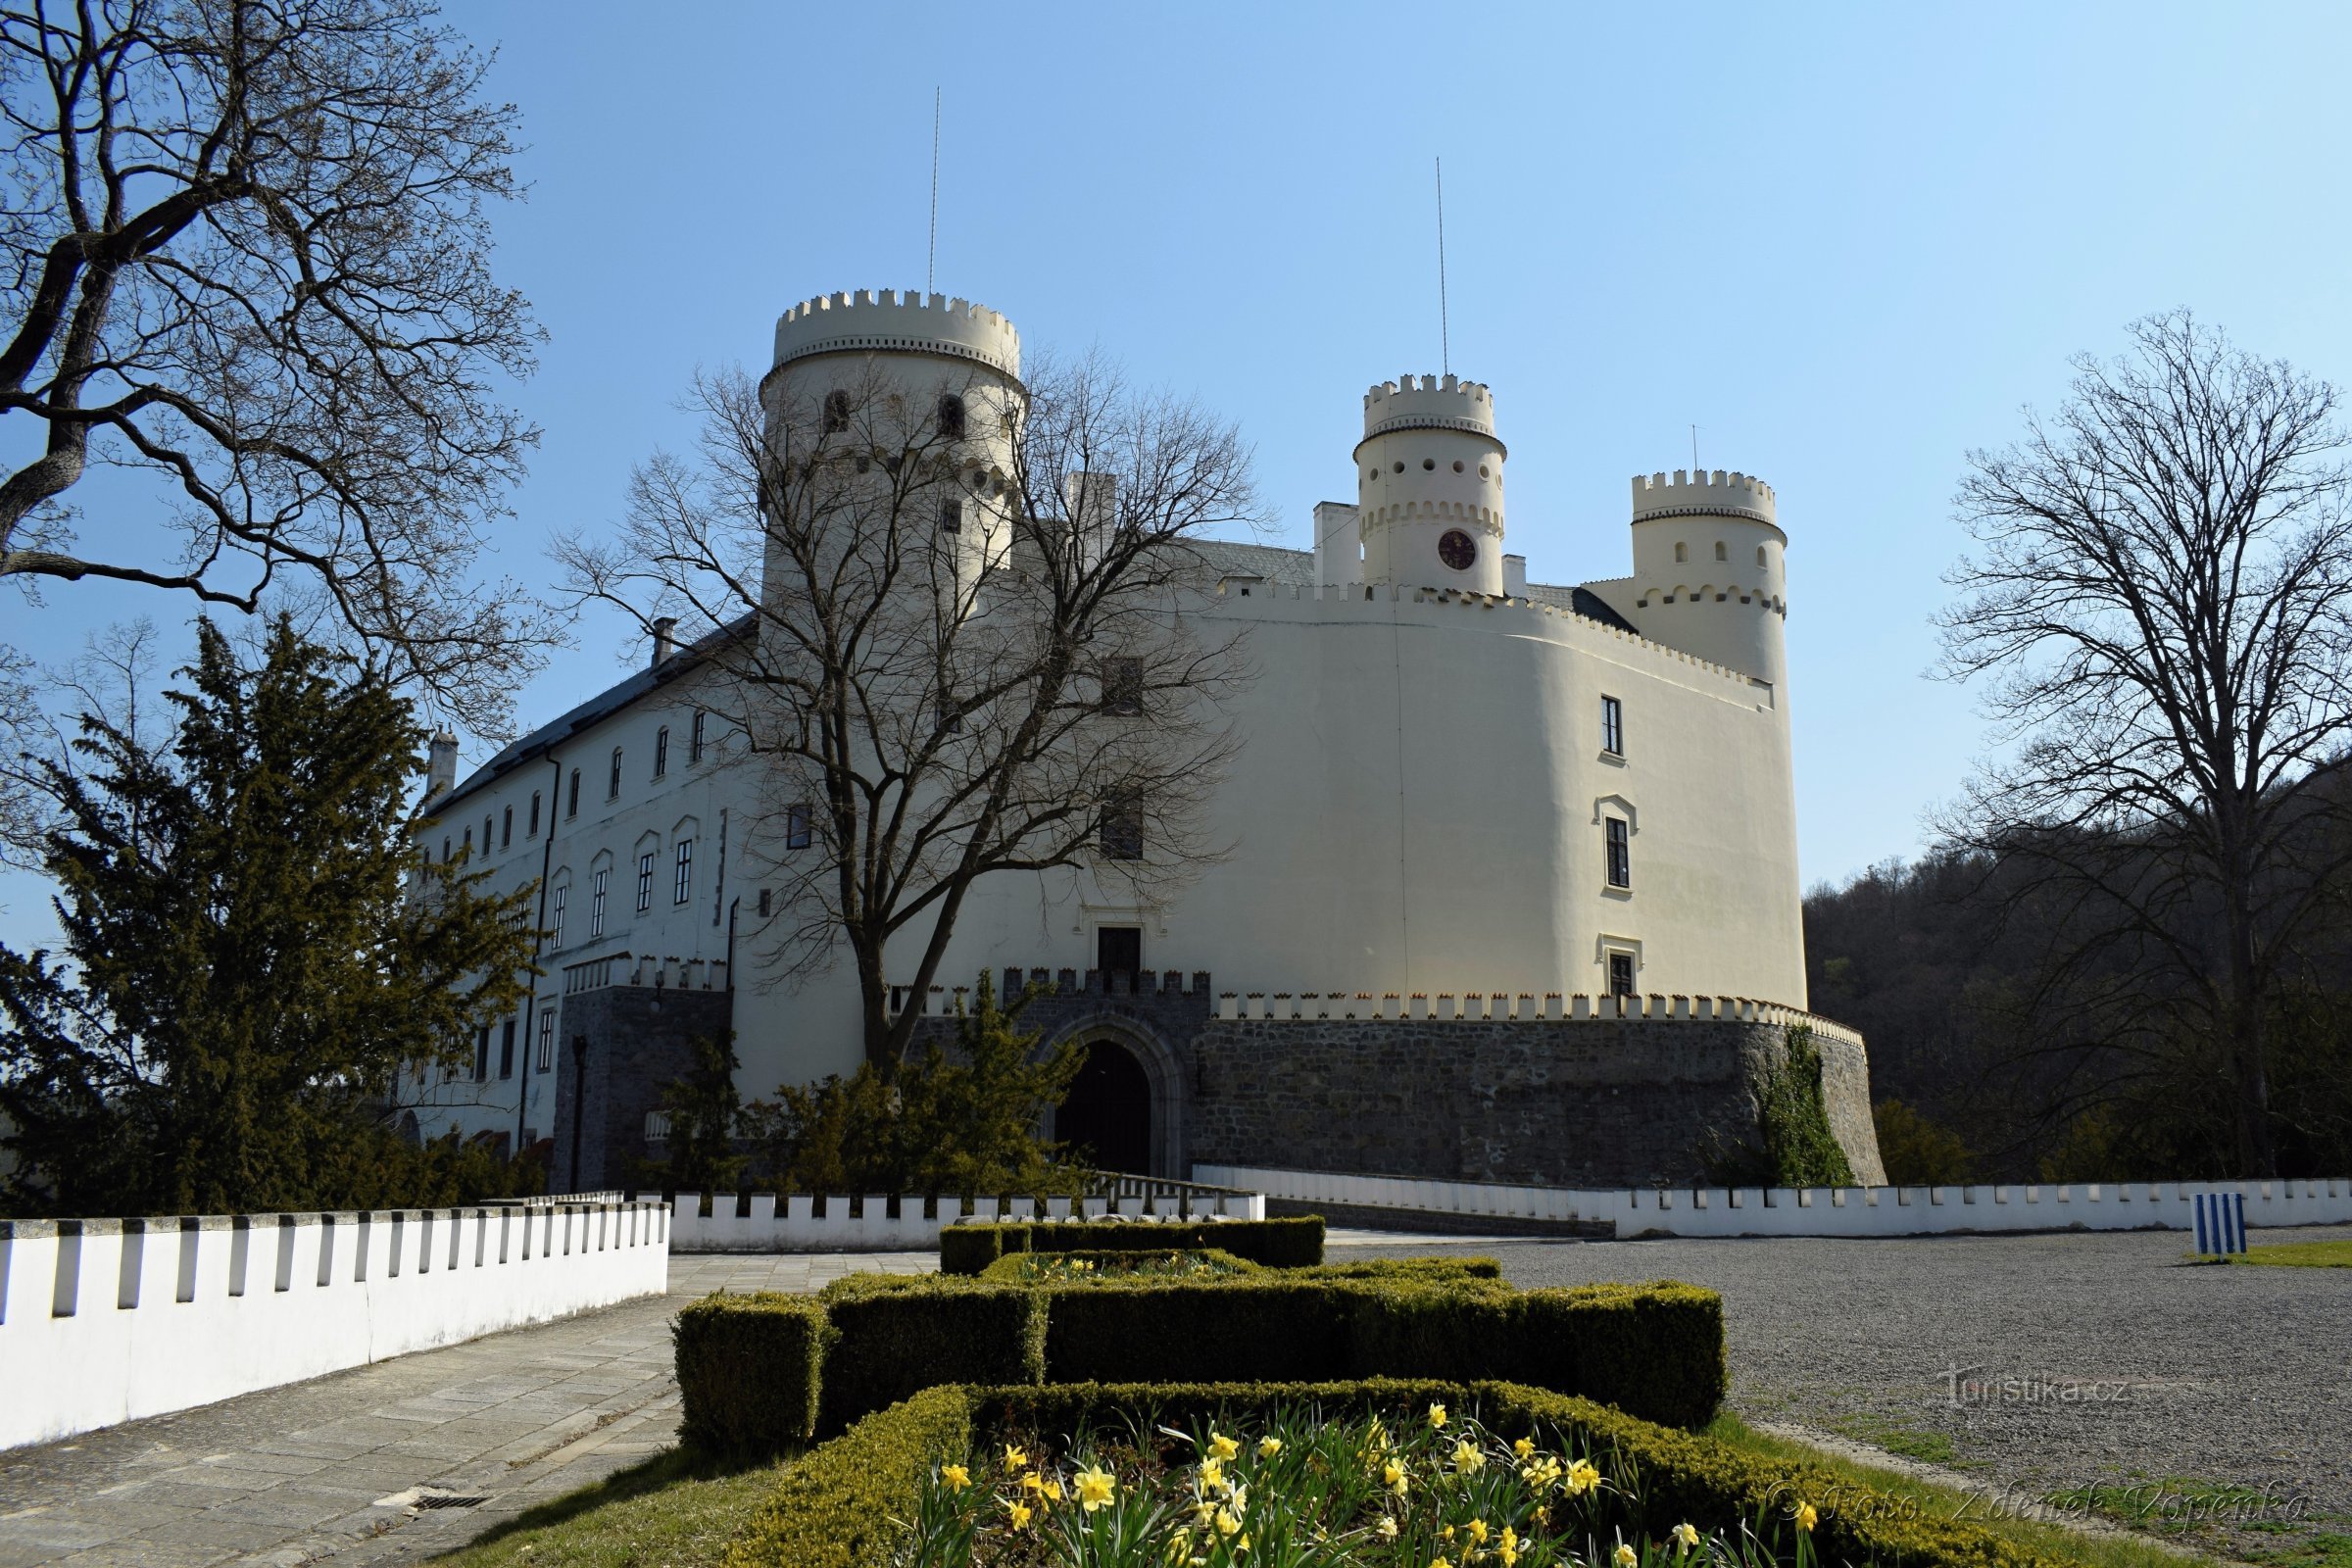 Orlik Chateau